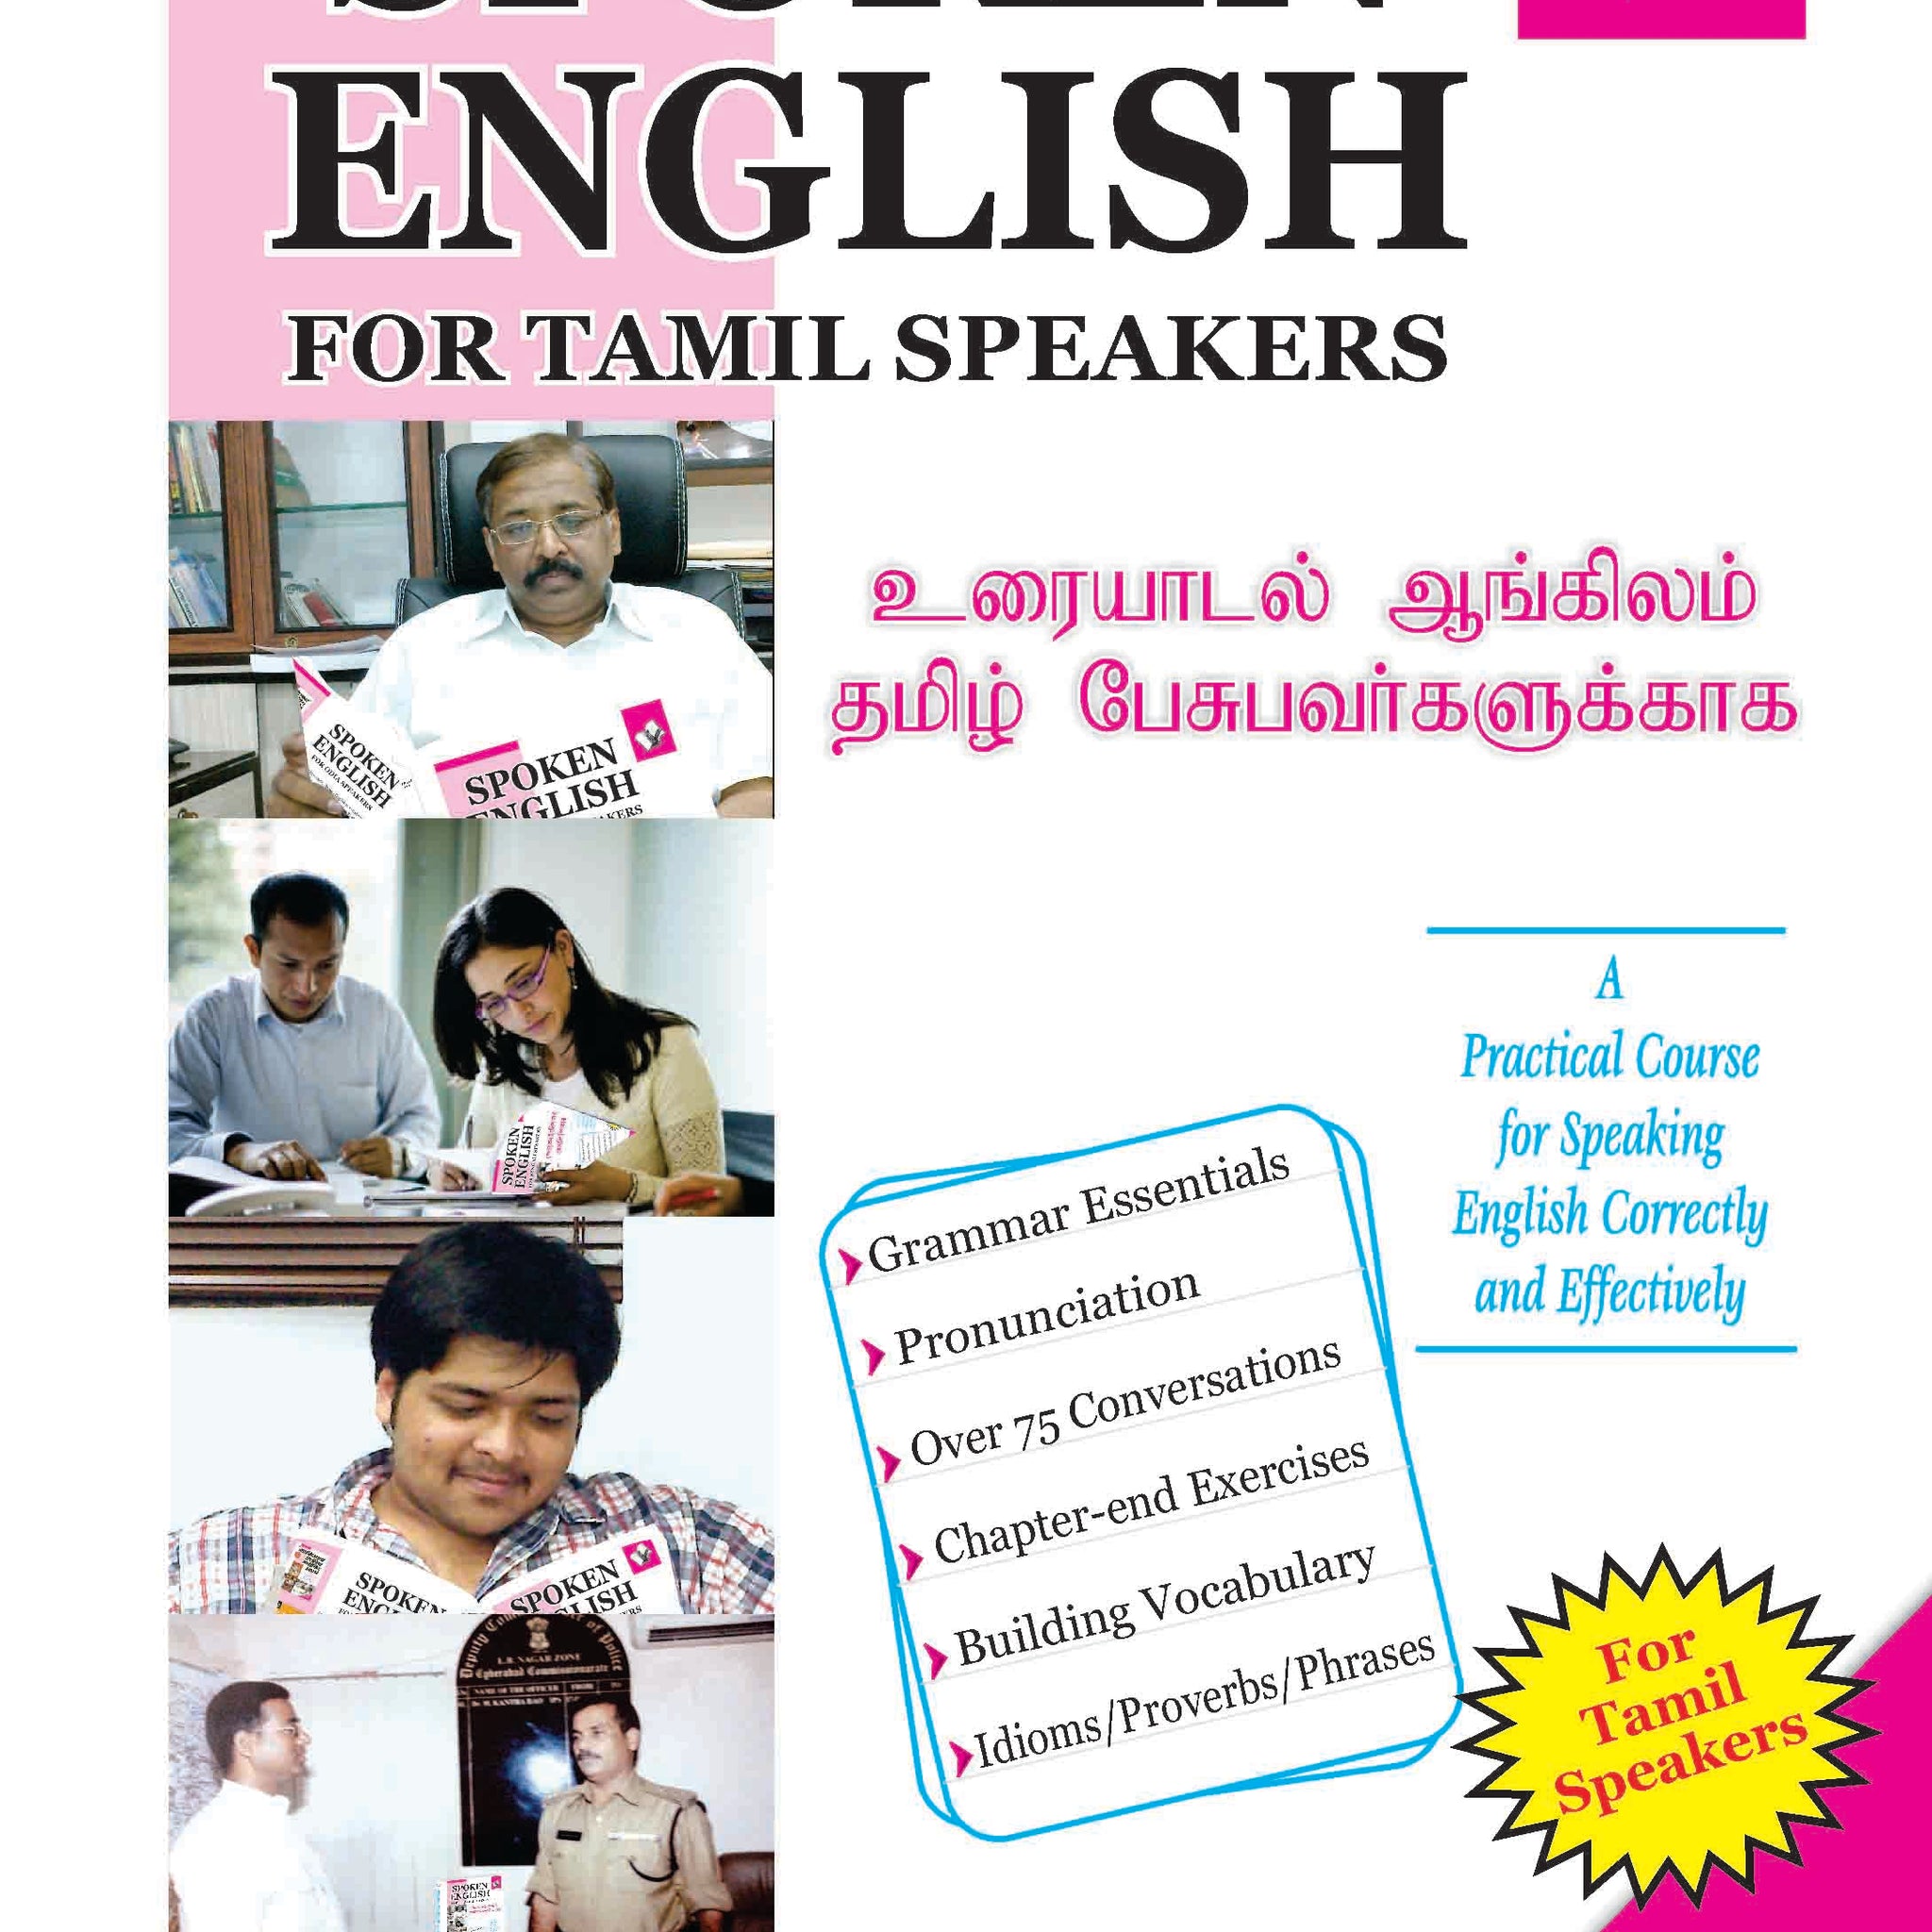 Spoken English For Tamil Speakers